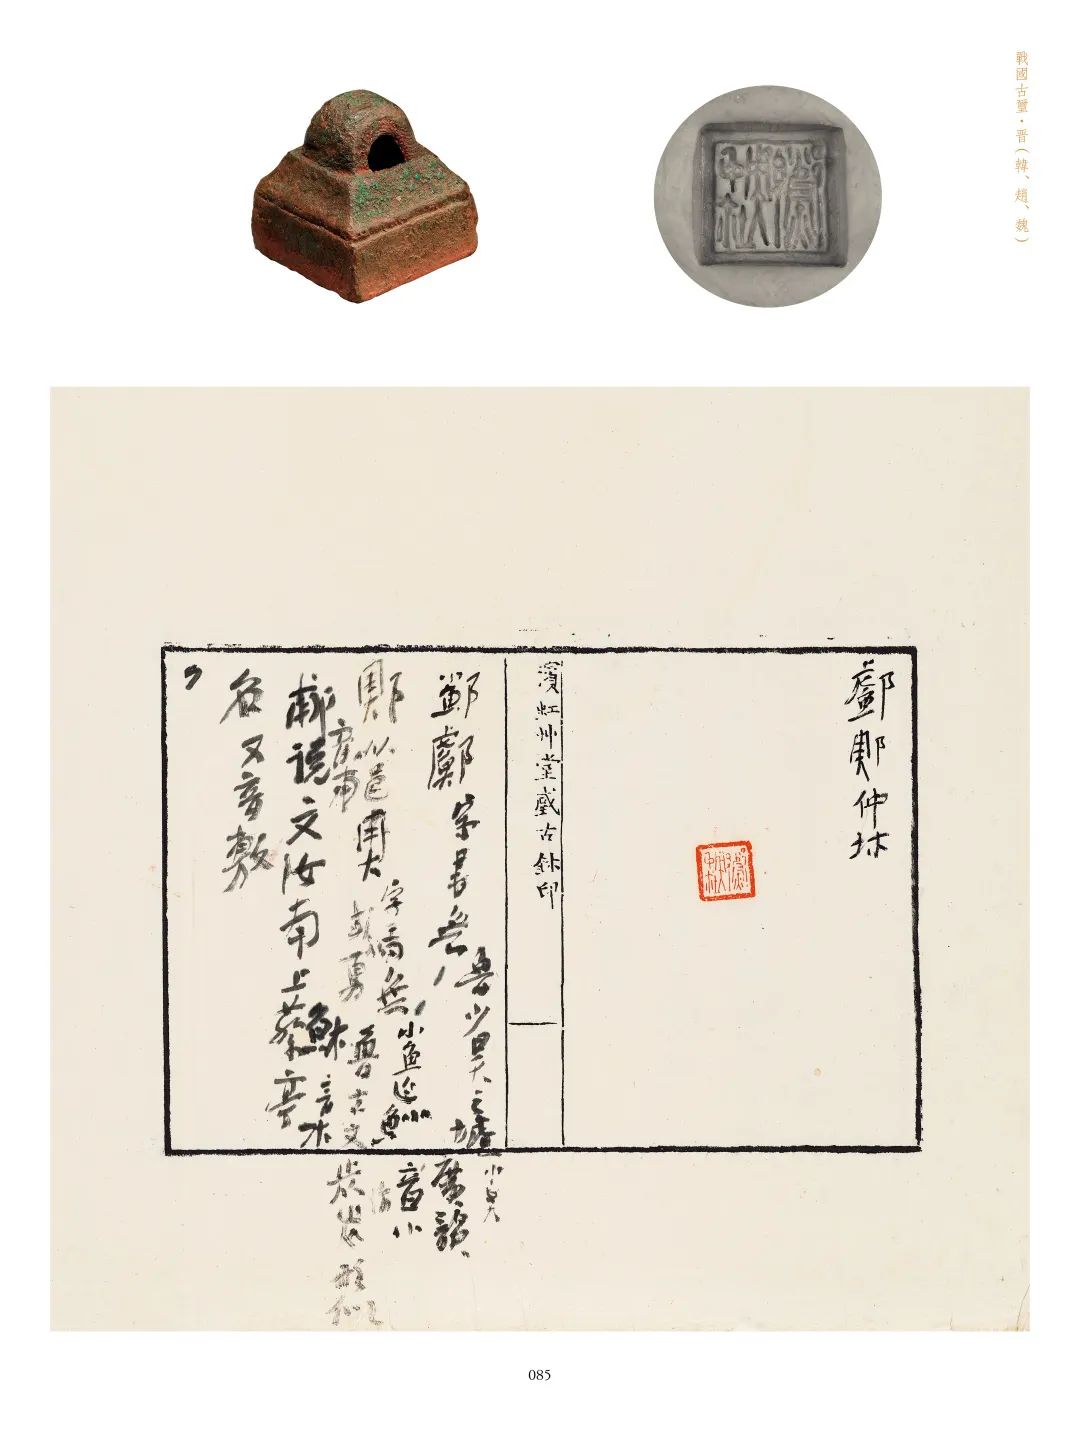 国内最具学术与艺术价值的玺印收藏集合体之一《古物影——黄宾虹古玺印收藏集萃》(图153)